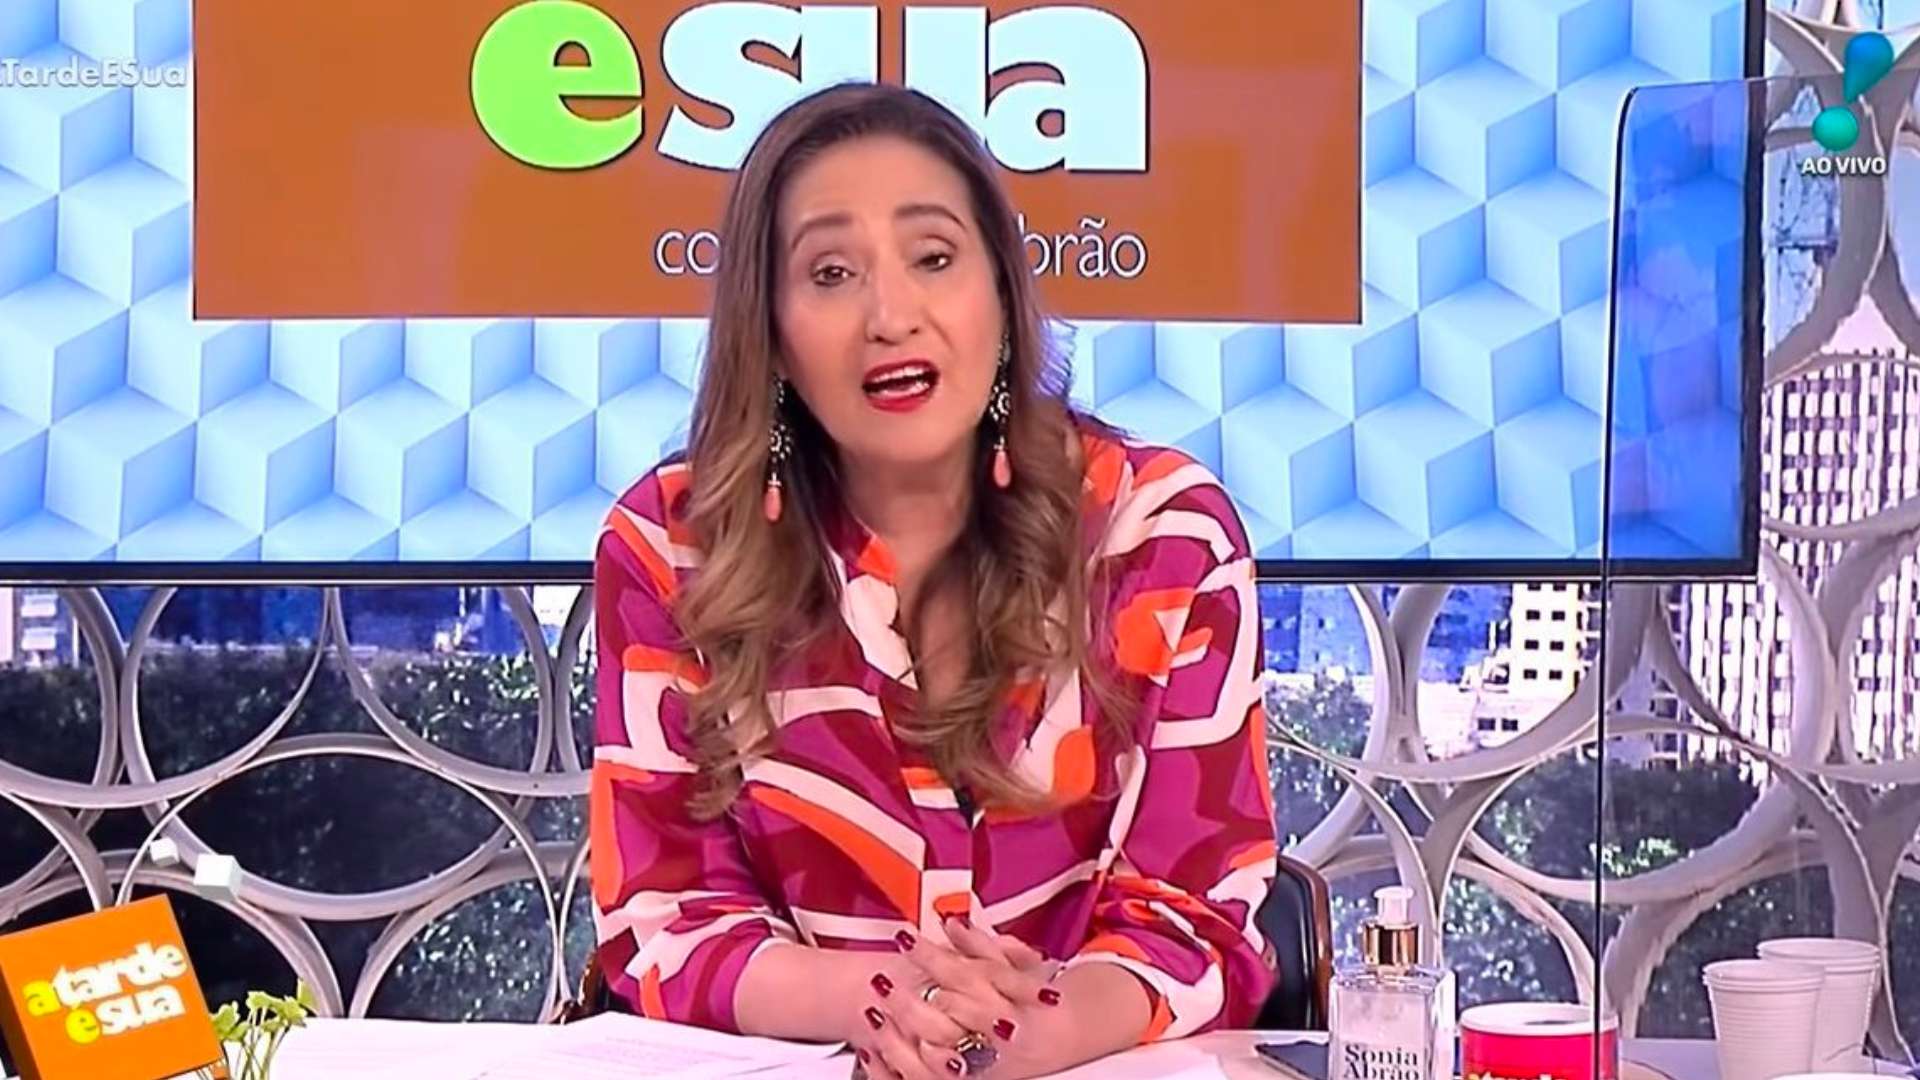 BBB 23: Sonia Abrão opina sobre Paredão, se revolta e exige eliminação de sister: “Não gosto” - Metropolitana FM